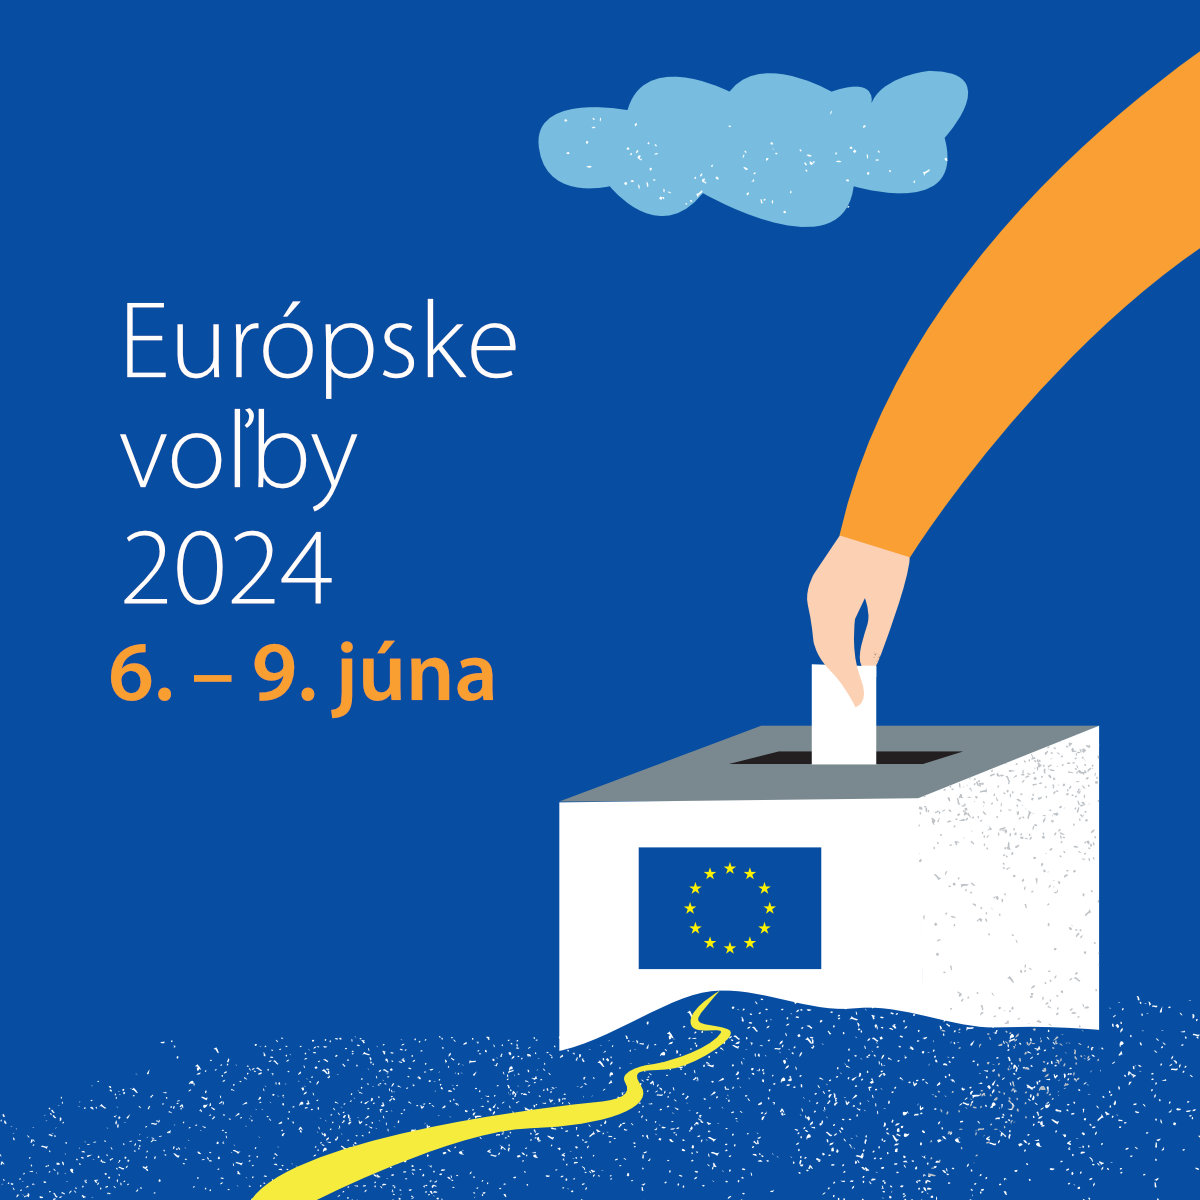 Európske voľby 2024 - Square